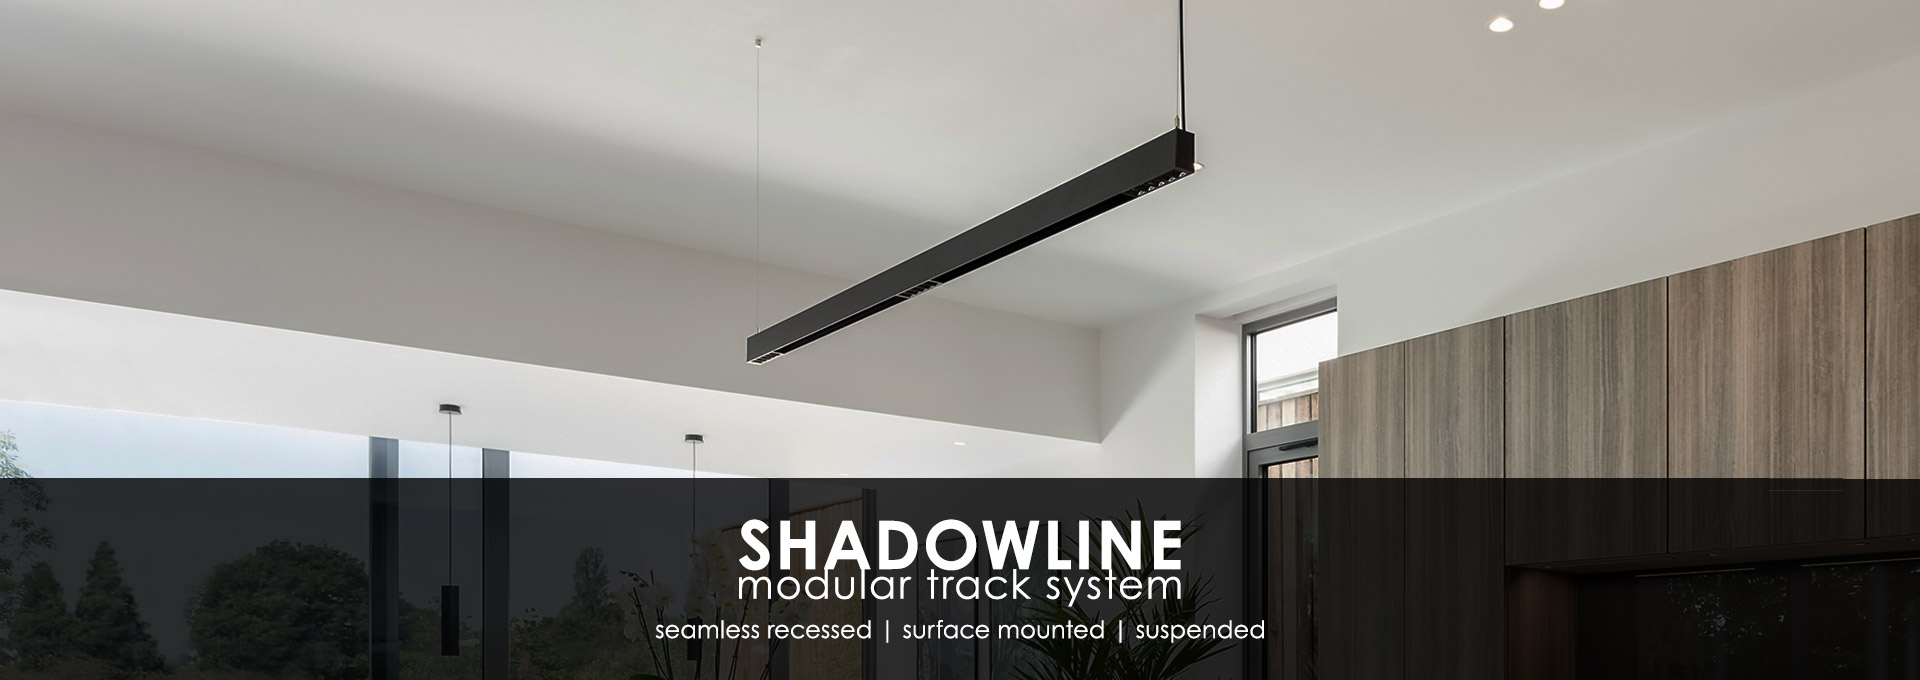 Shadowline Modular Track System